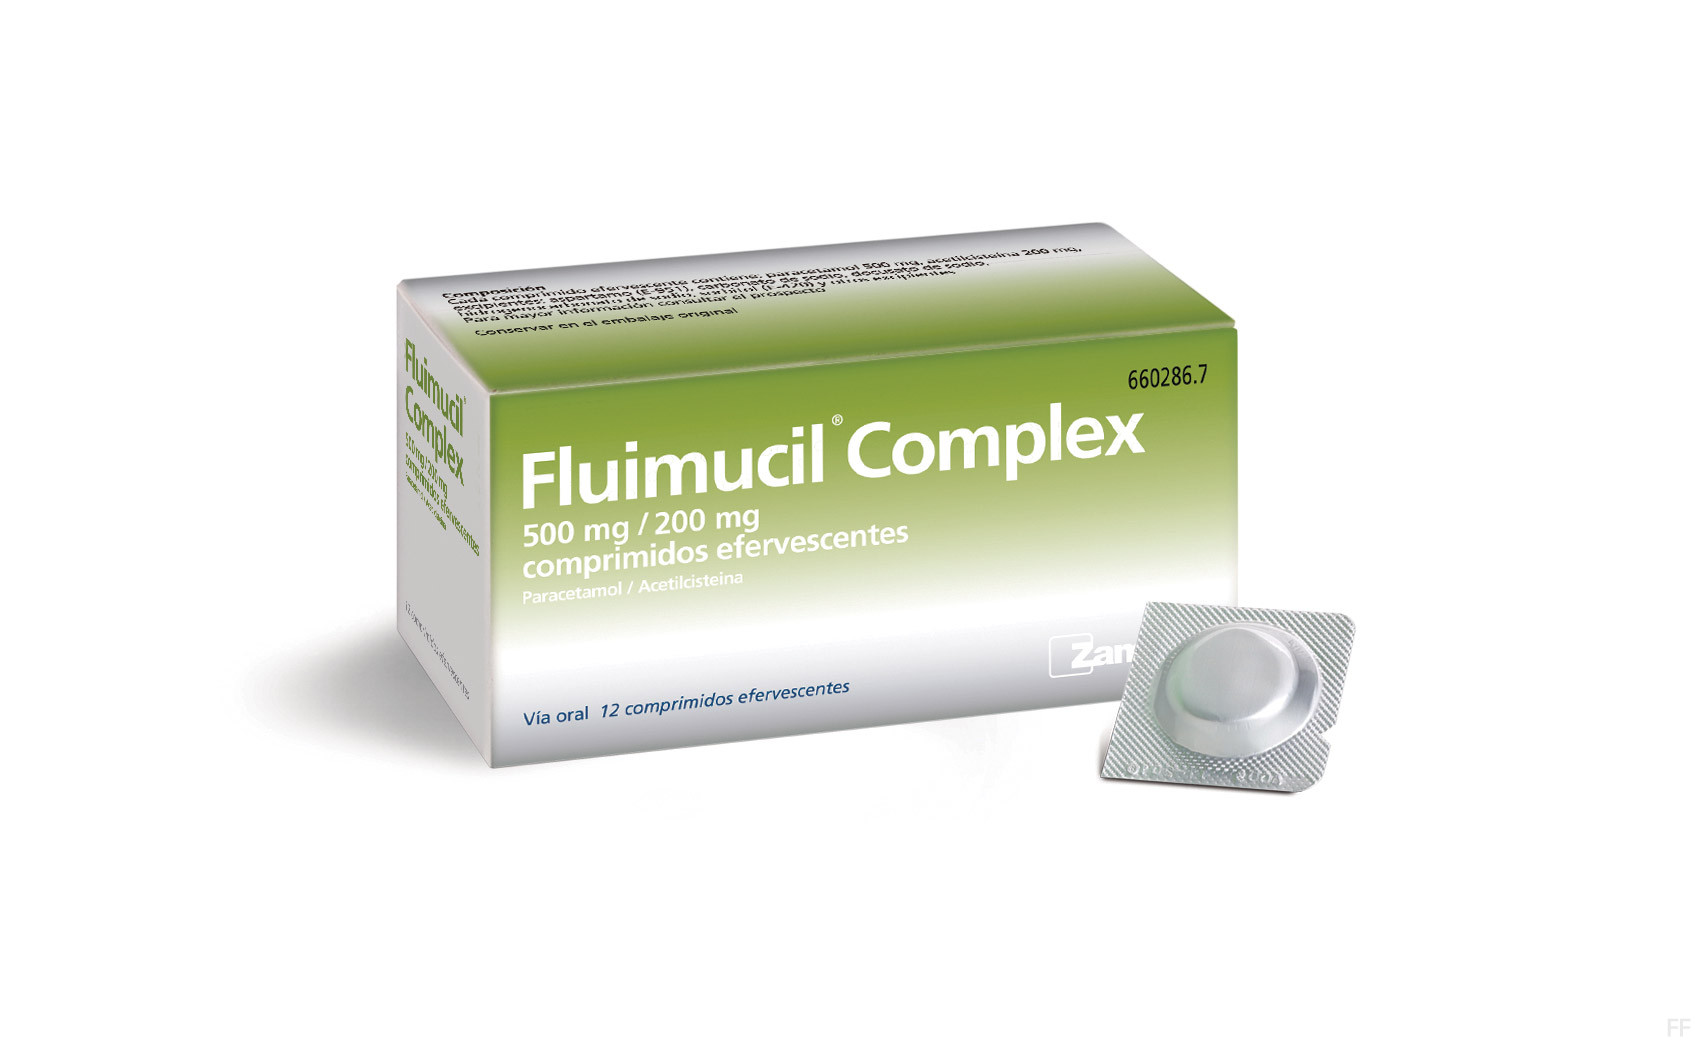 Fluimucil complex